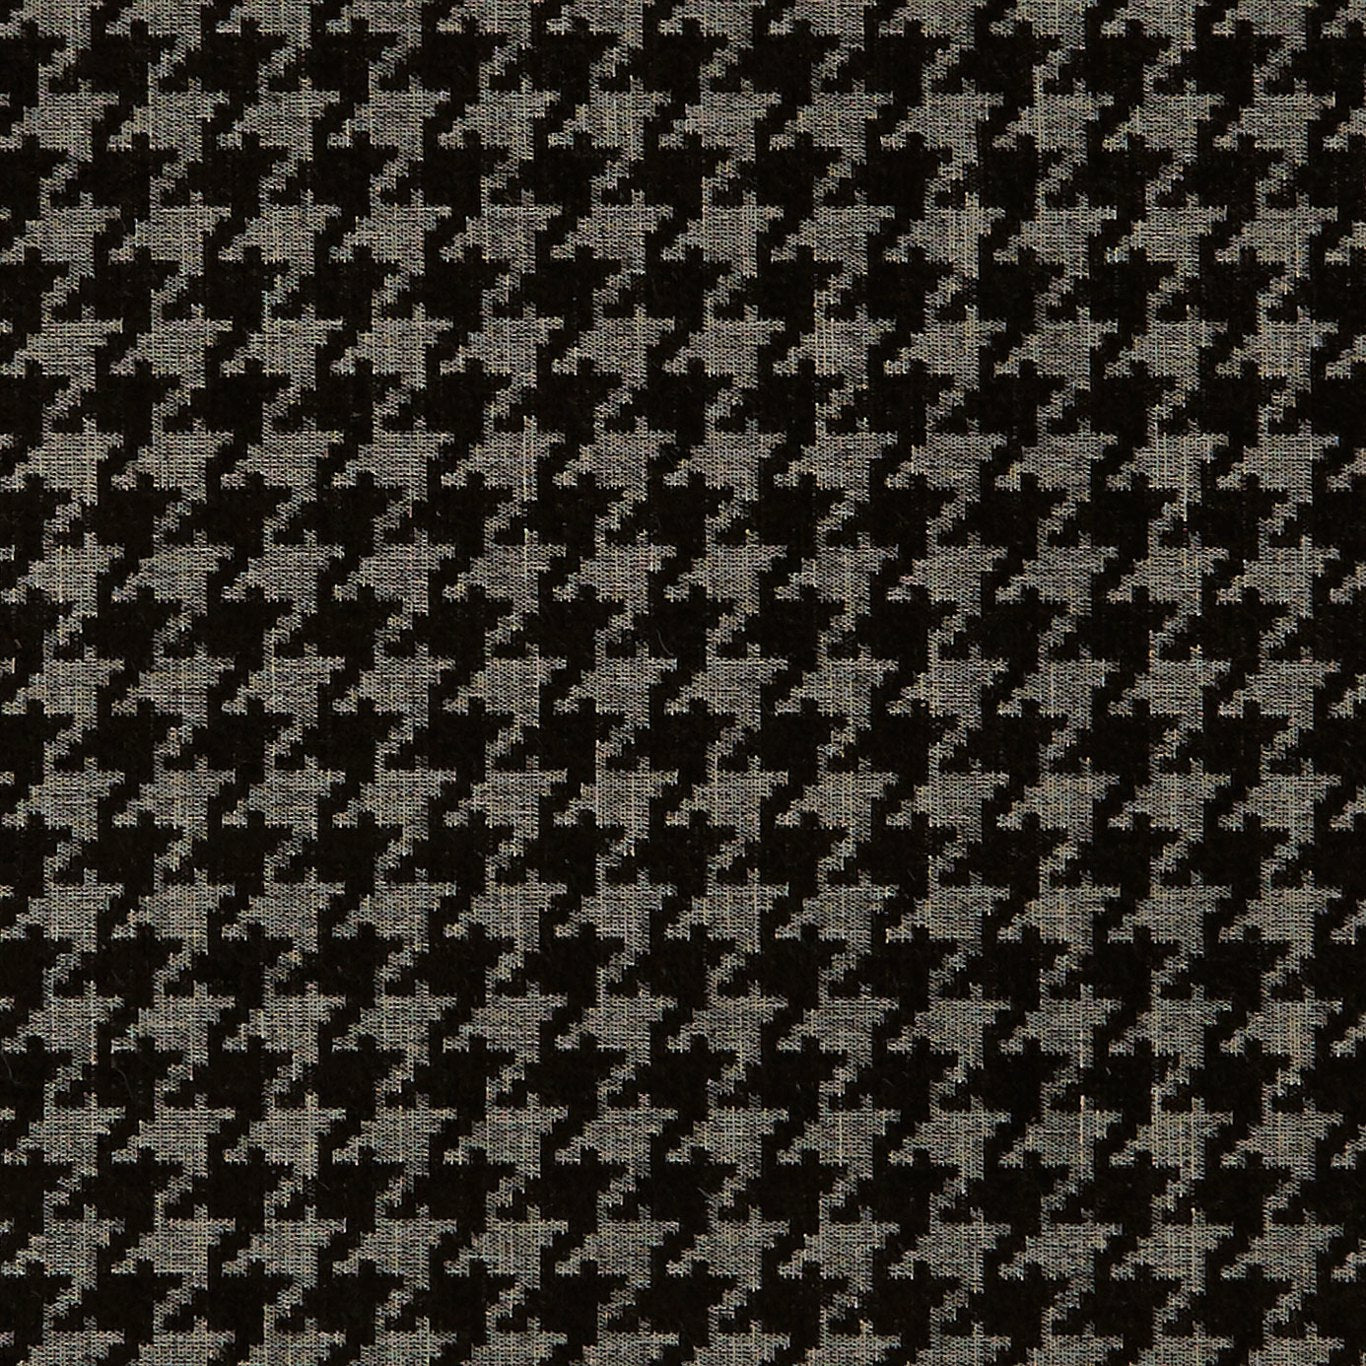 Bw1027 Fabric by Clarke & Clarke - F0900/01 - Black/White